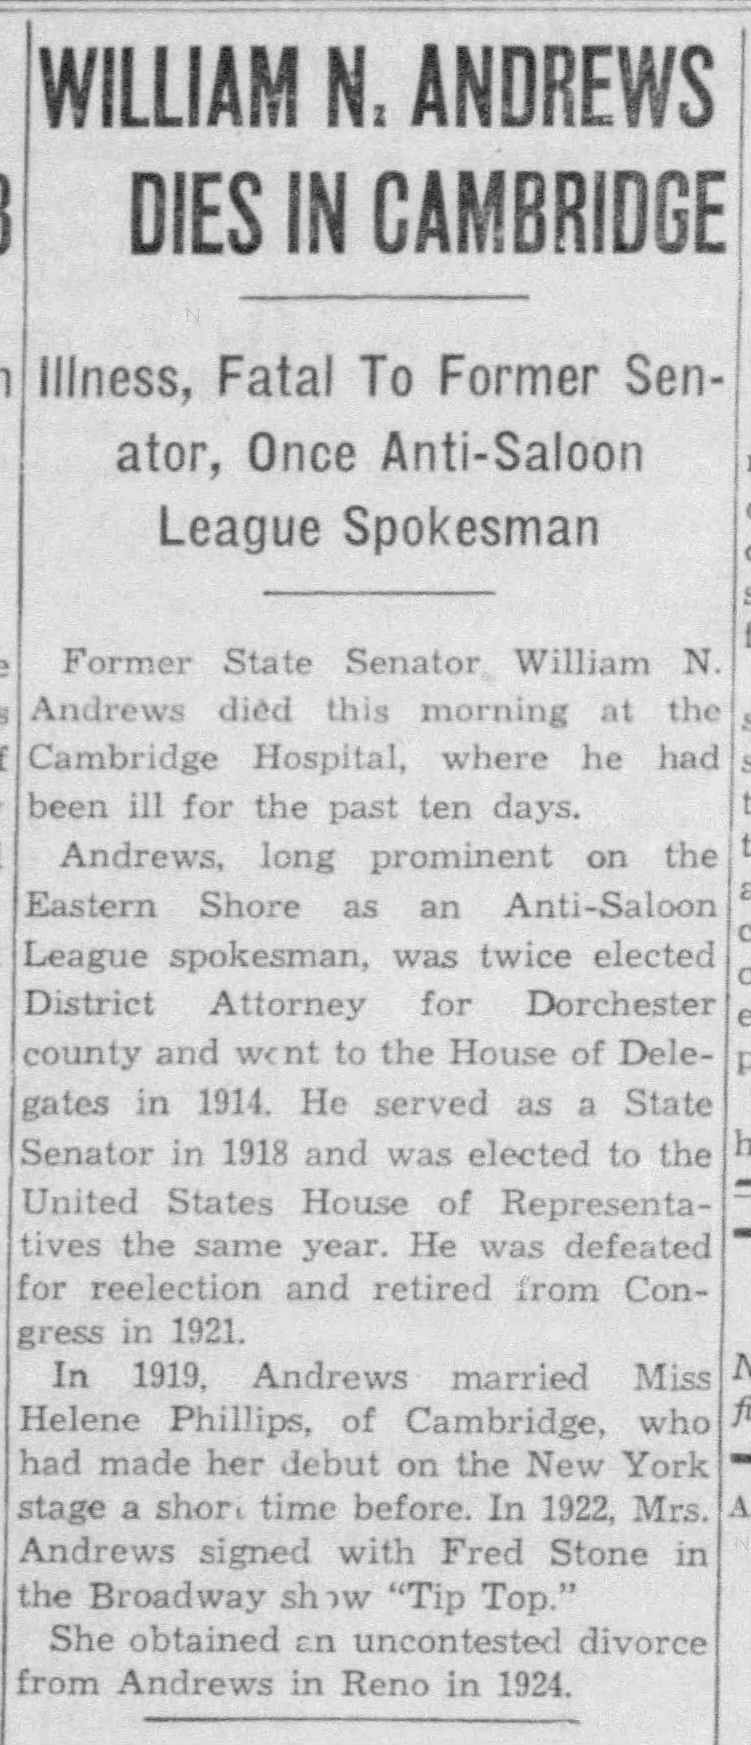 William N. Andrews Dies in Cambridge; 27 Dec 1937; The Evening Sun; 27